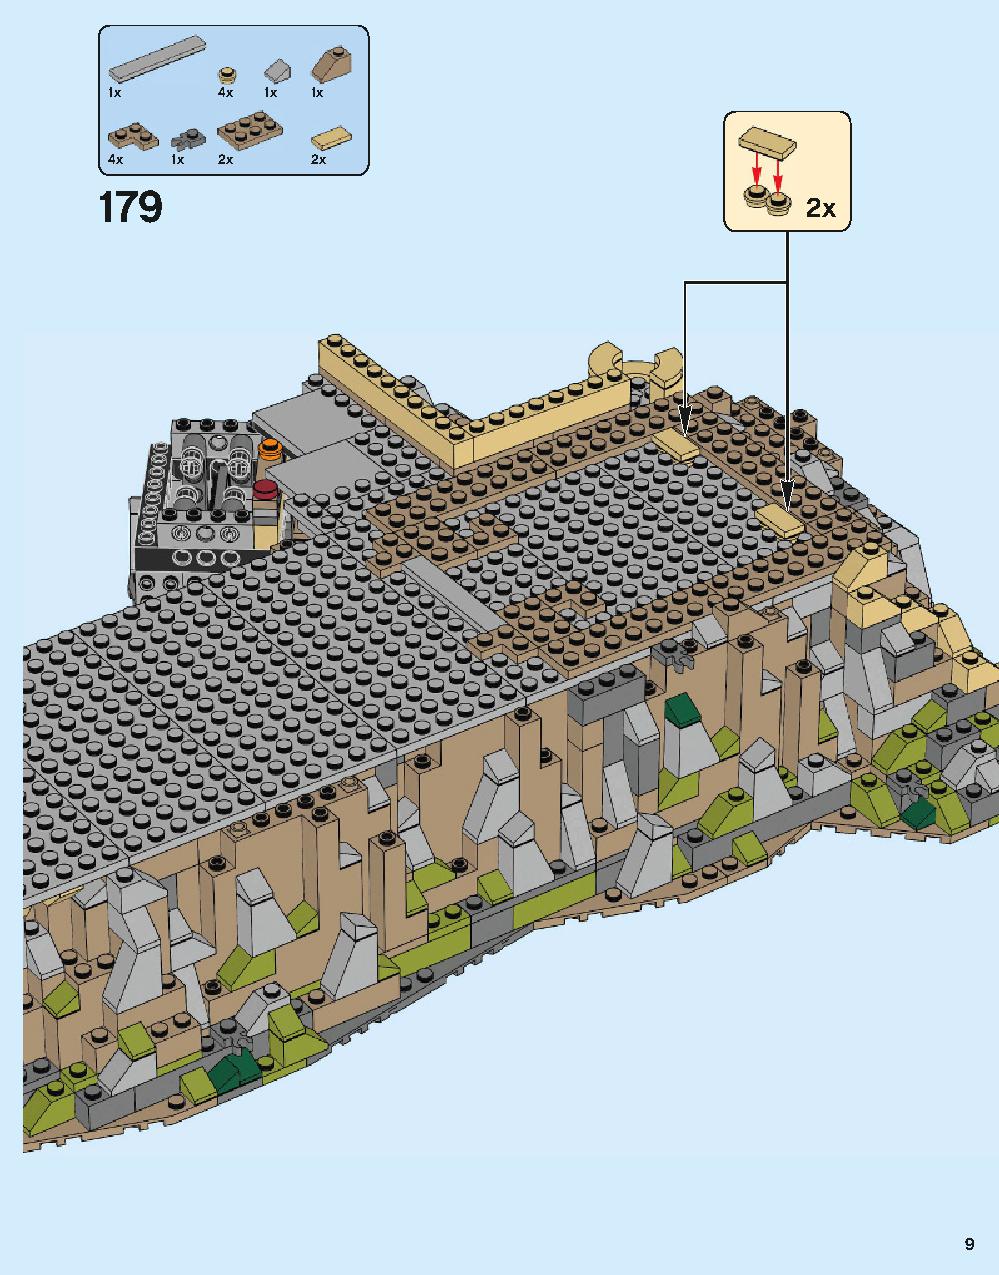 ホグワーツ城 71043 レゴの商品情報 レゴの説明書・組立方法 9 page